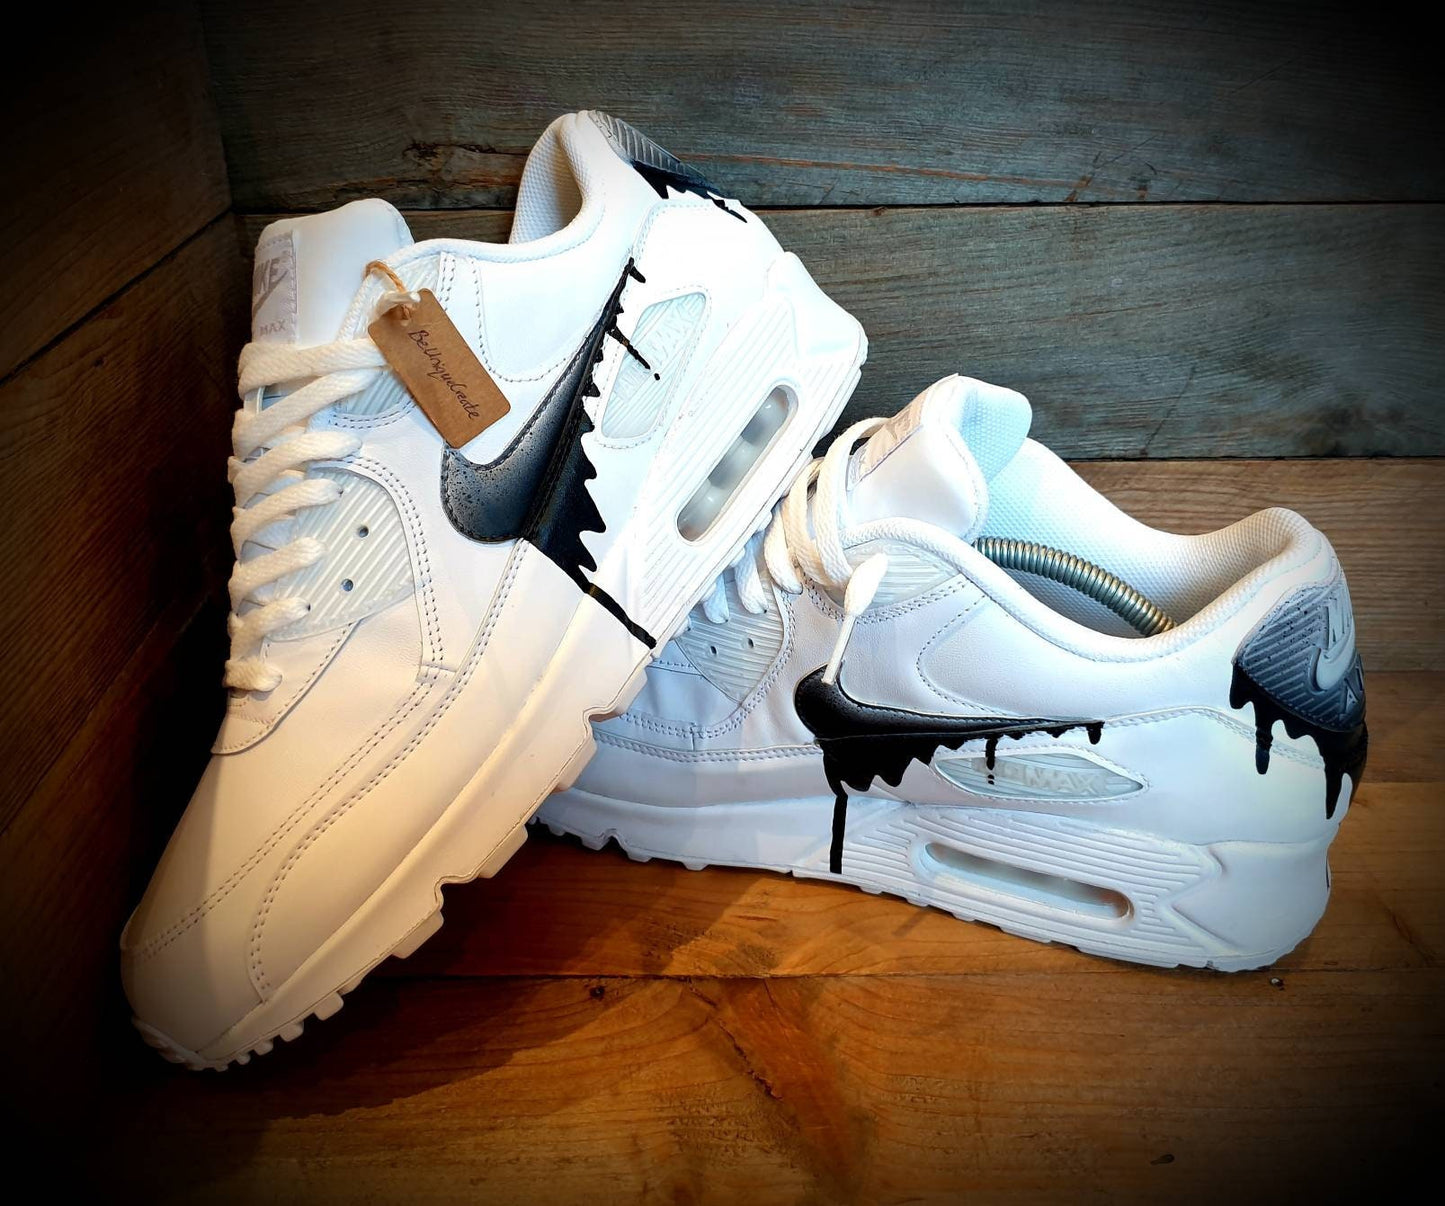 Custom Painted Air Max 90/Sneakers/Shoes/Kicks/Premium/Personalised/Speckled Drip-Black